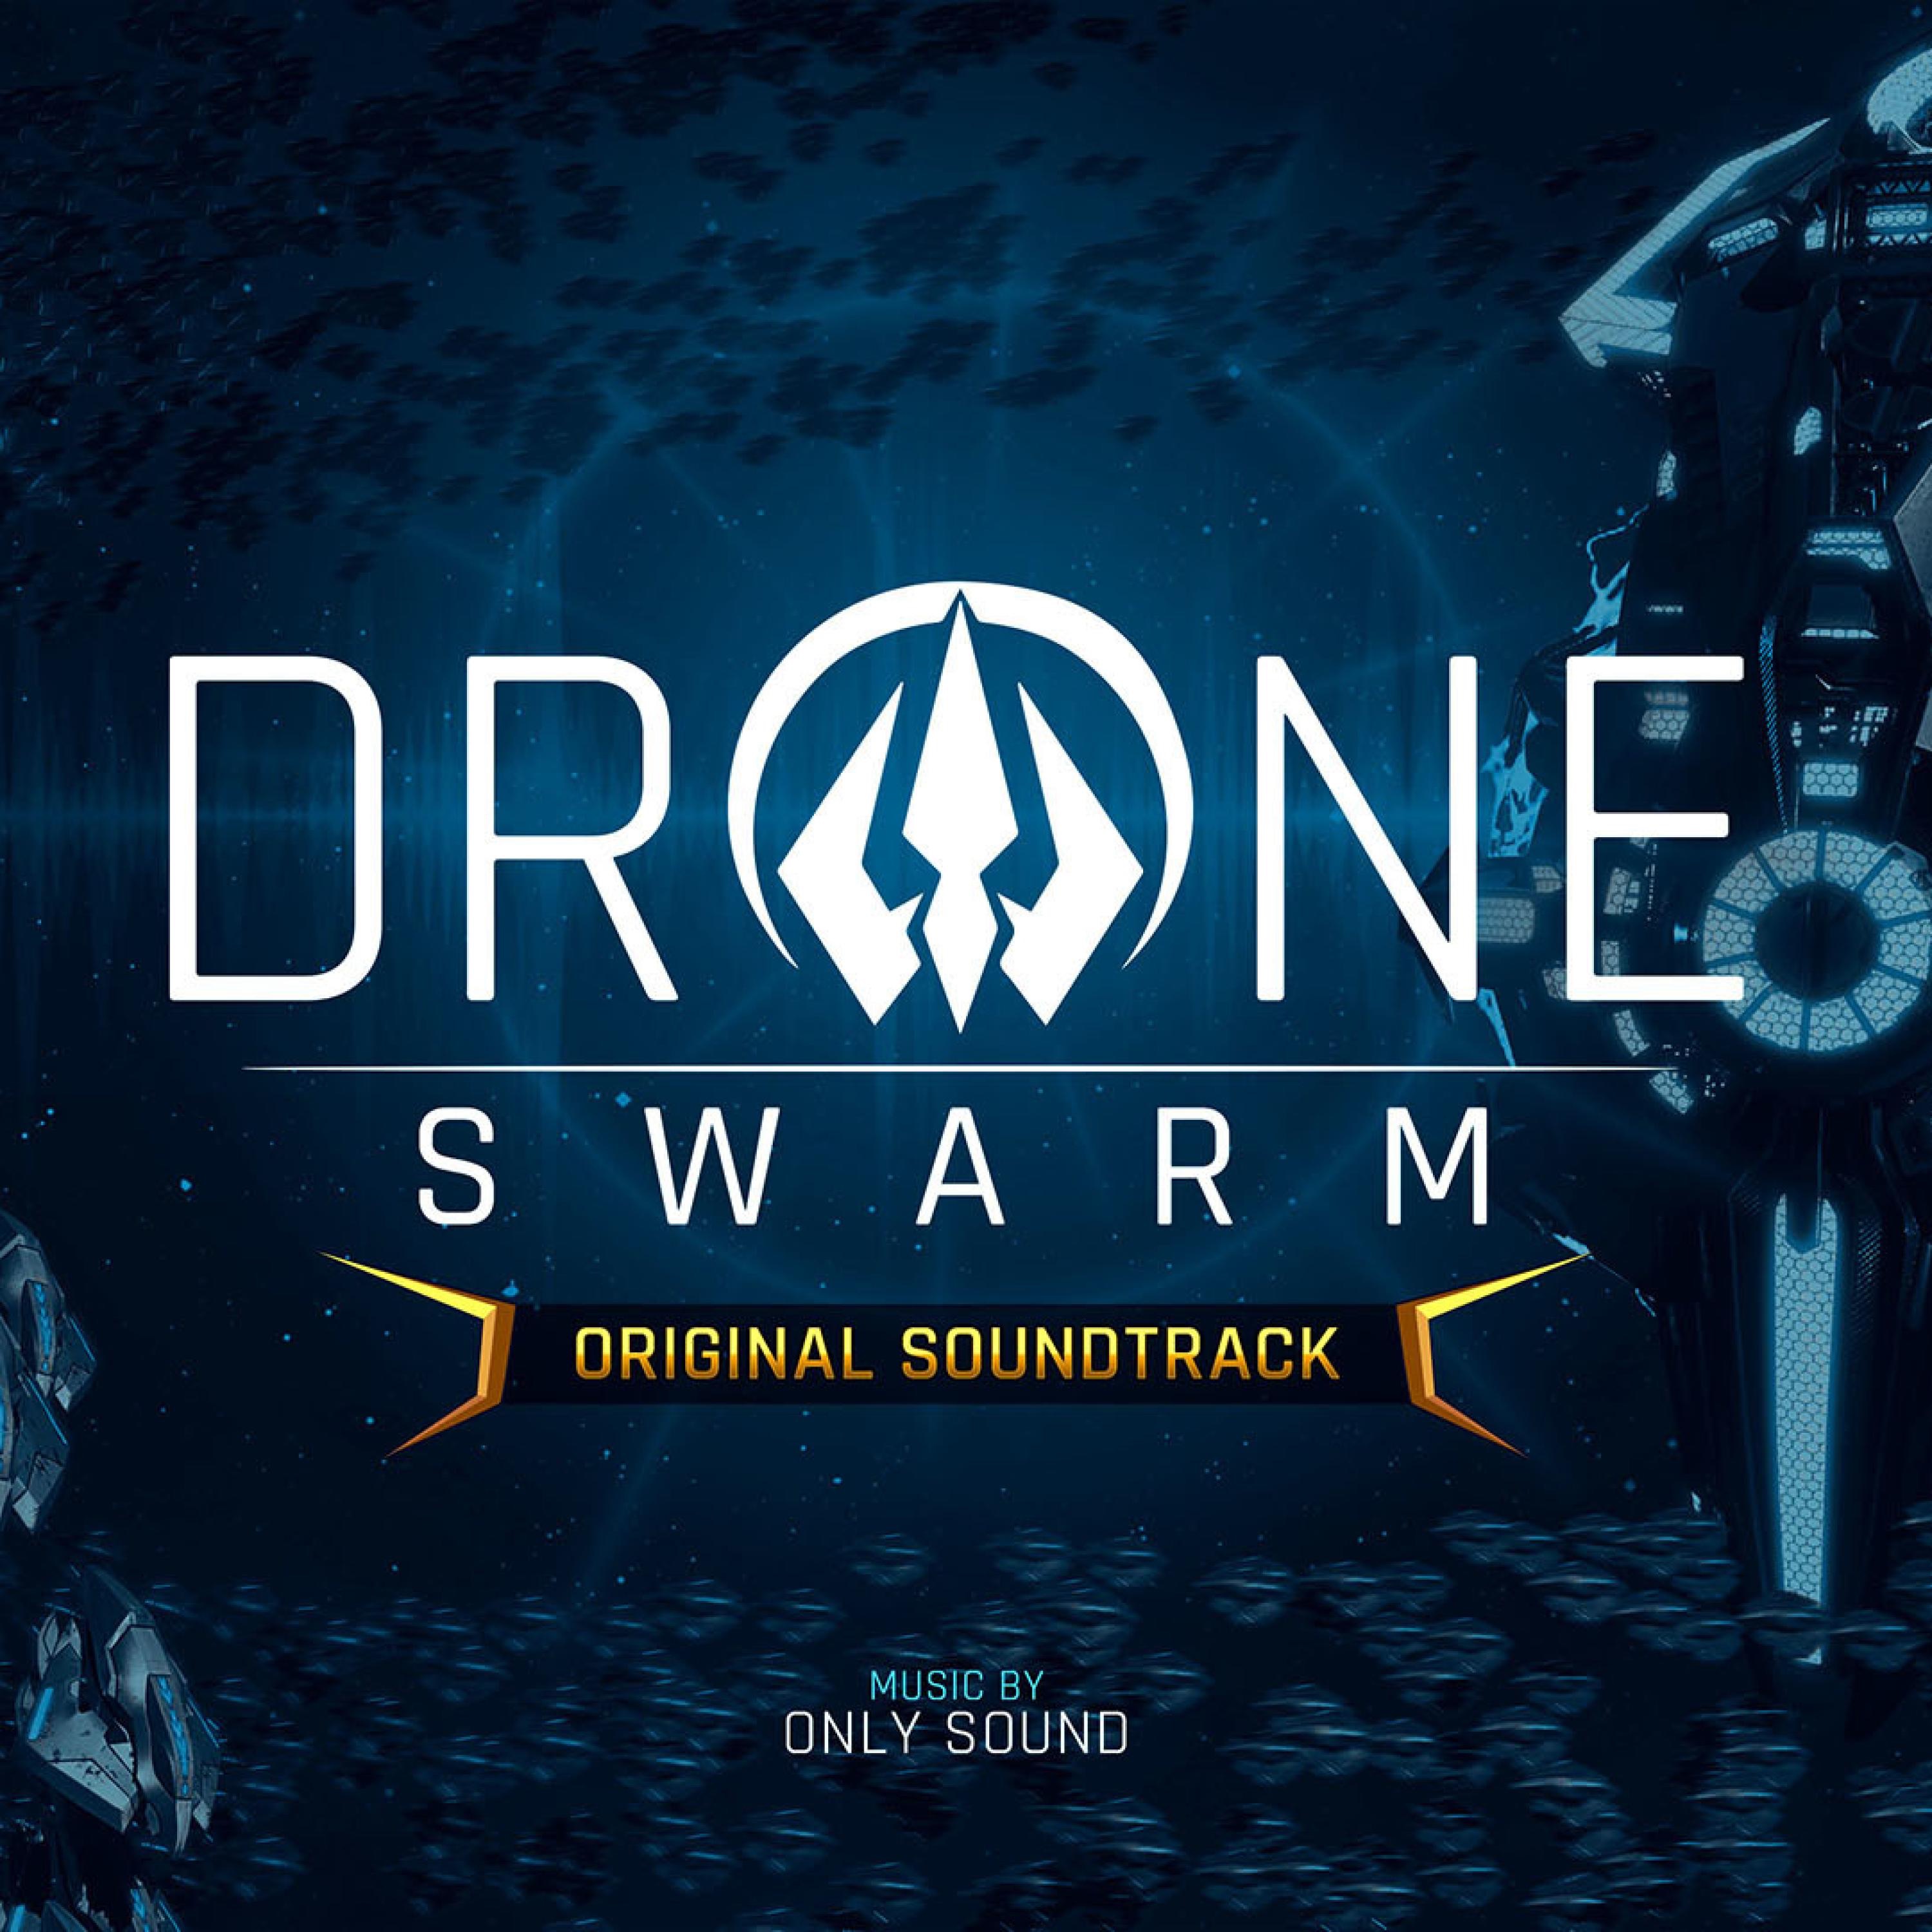 Drone swarm steam фото 19